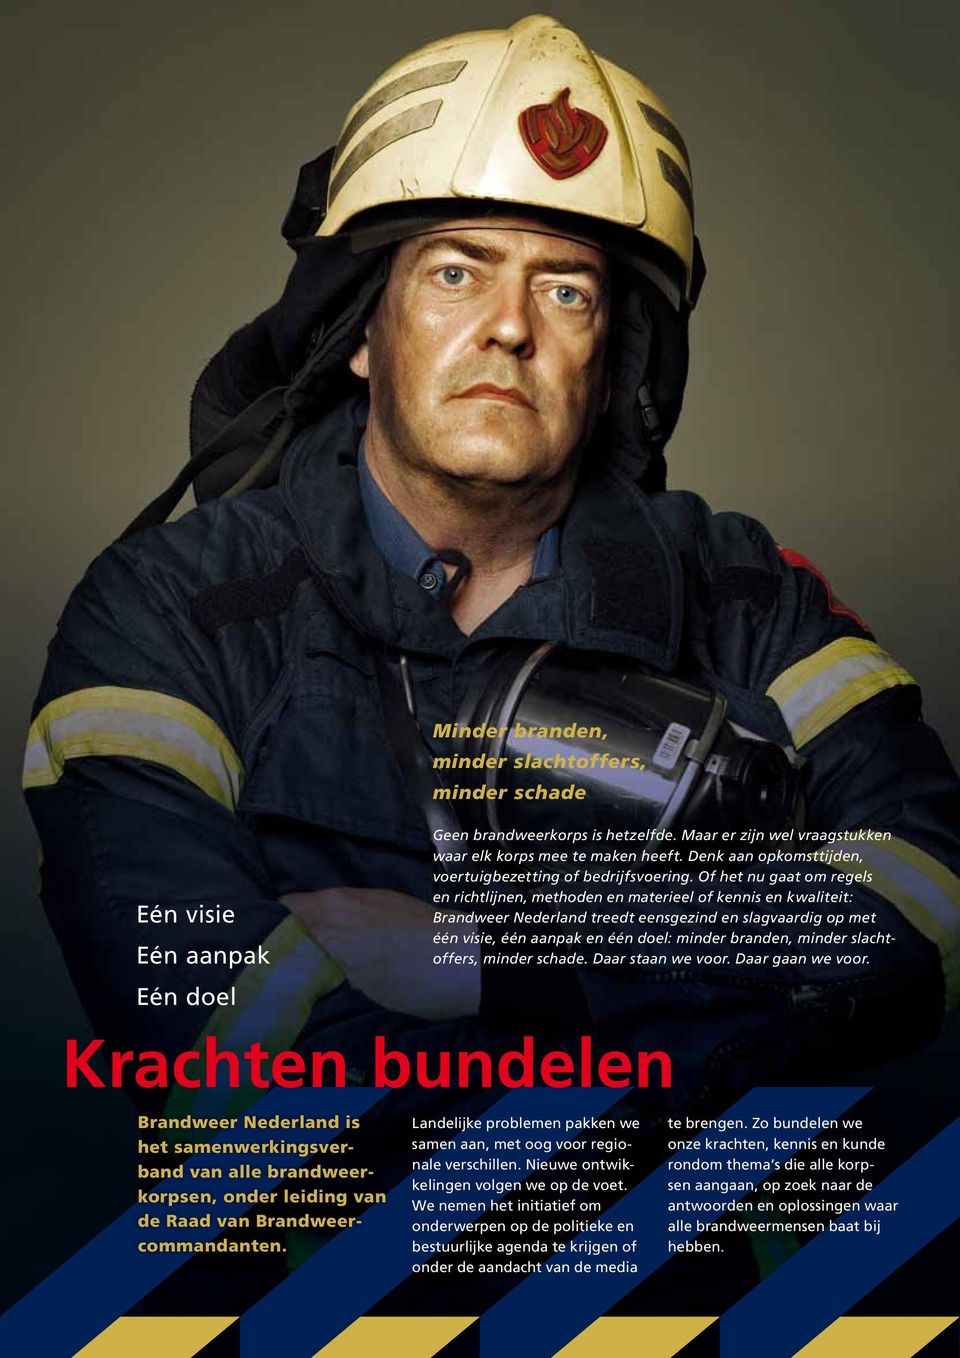 Of het nu gaat om regels en richtlijnen, methoden en materieel of kennis en kwaliteit: Brandweer Nederland treedt eensgezind en slagvaardig op met één visie, één aanpak en één doel: minder branden,